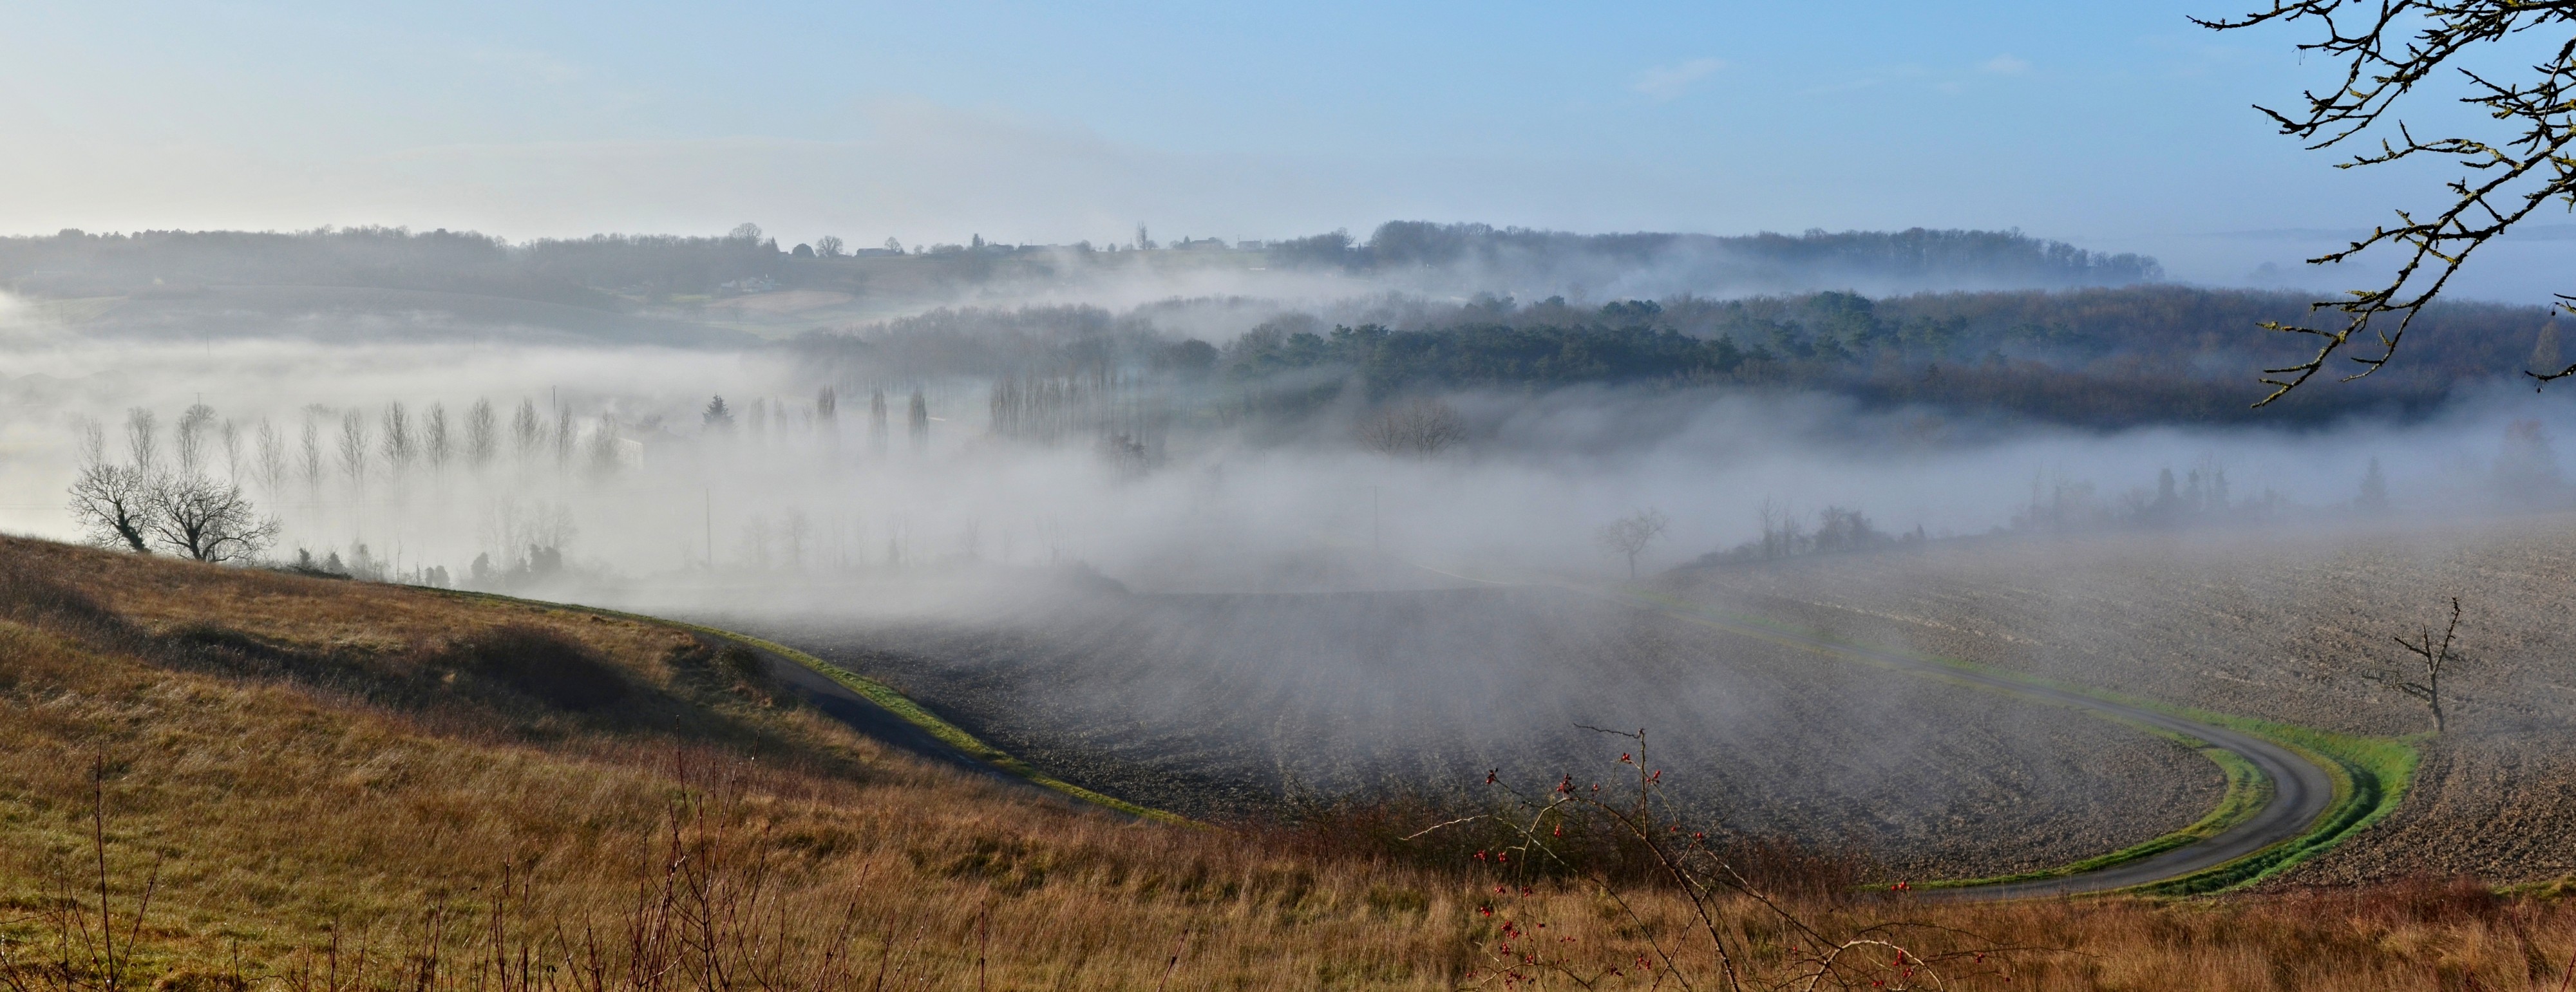 Saint-Amant 16 Collines&brouillard D24 2014